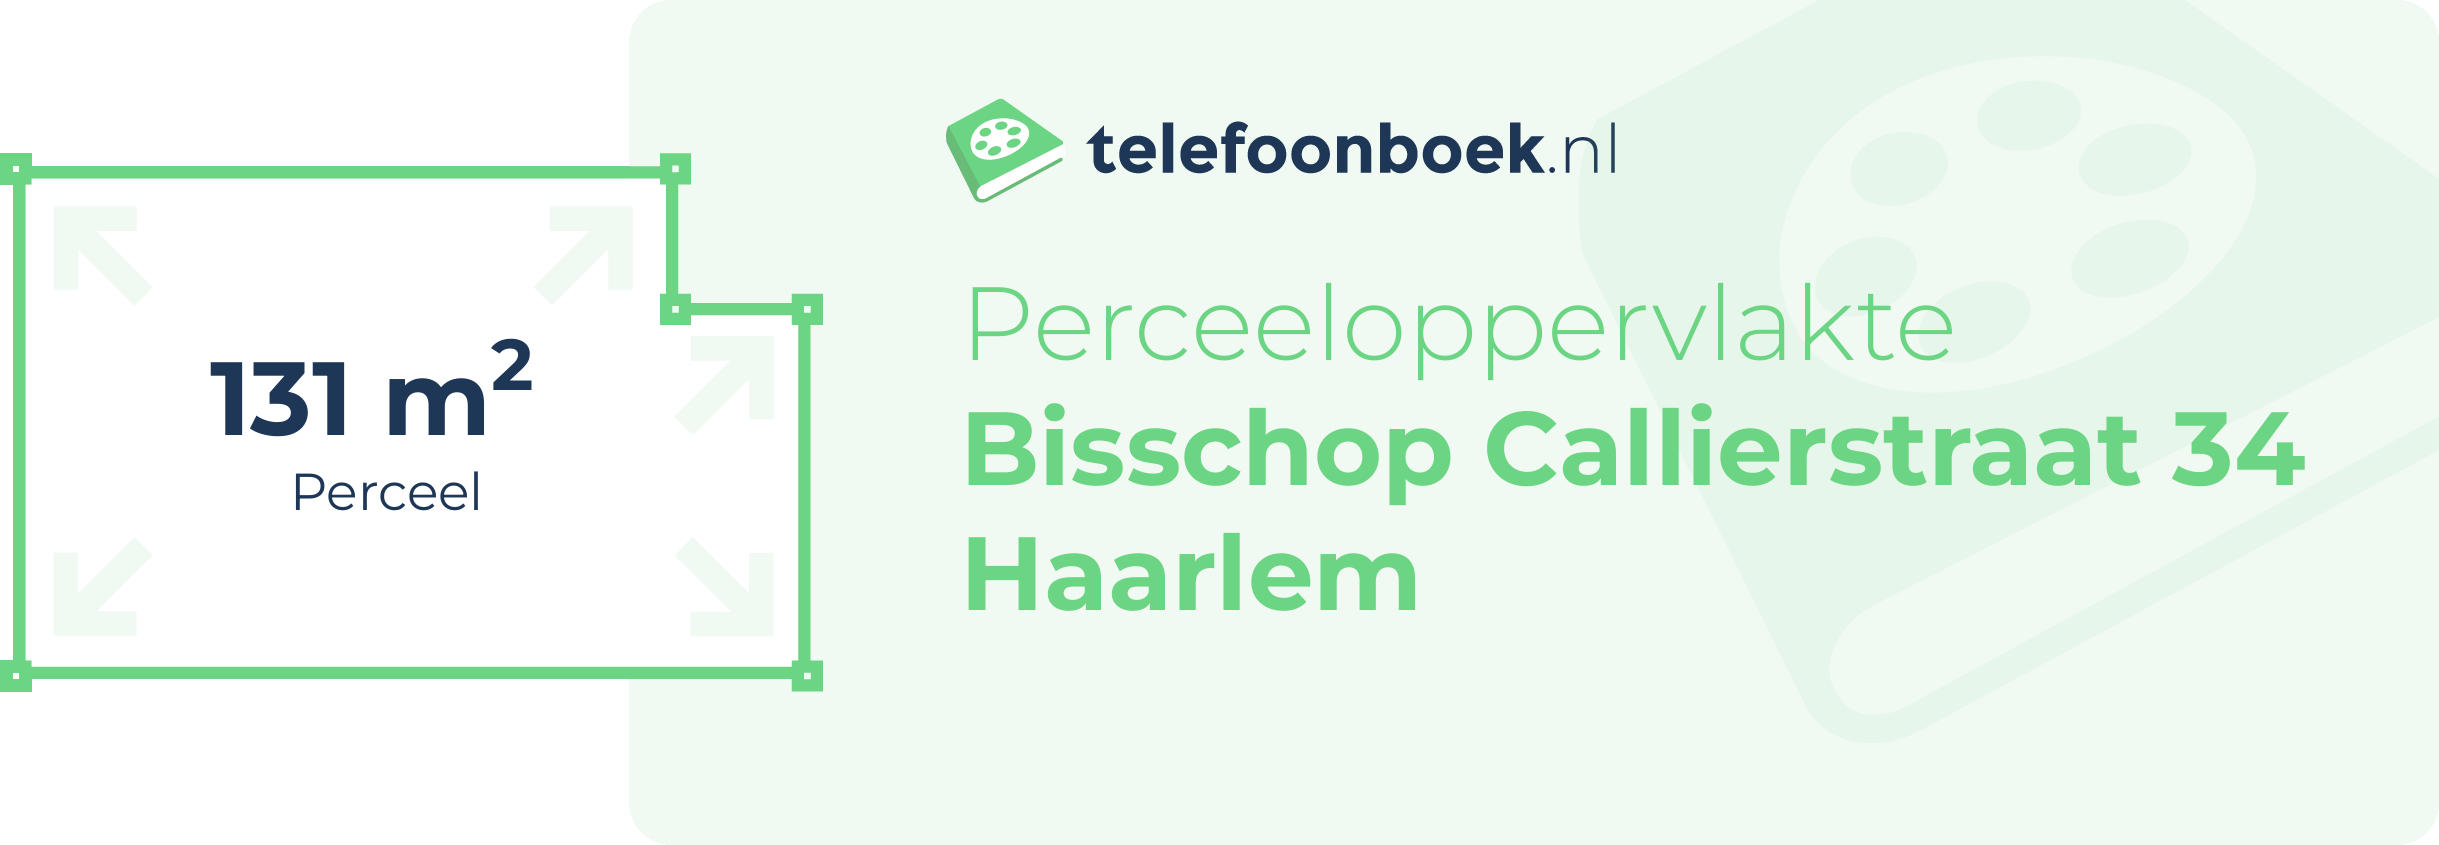 Perceeloppervlakte Bisschop Callierstraat 34 Haarlem